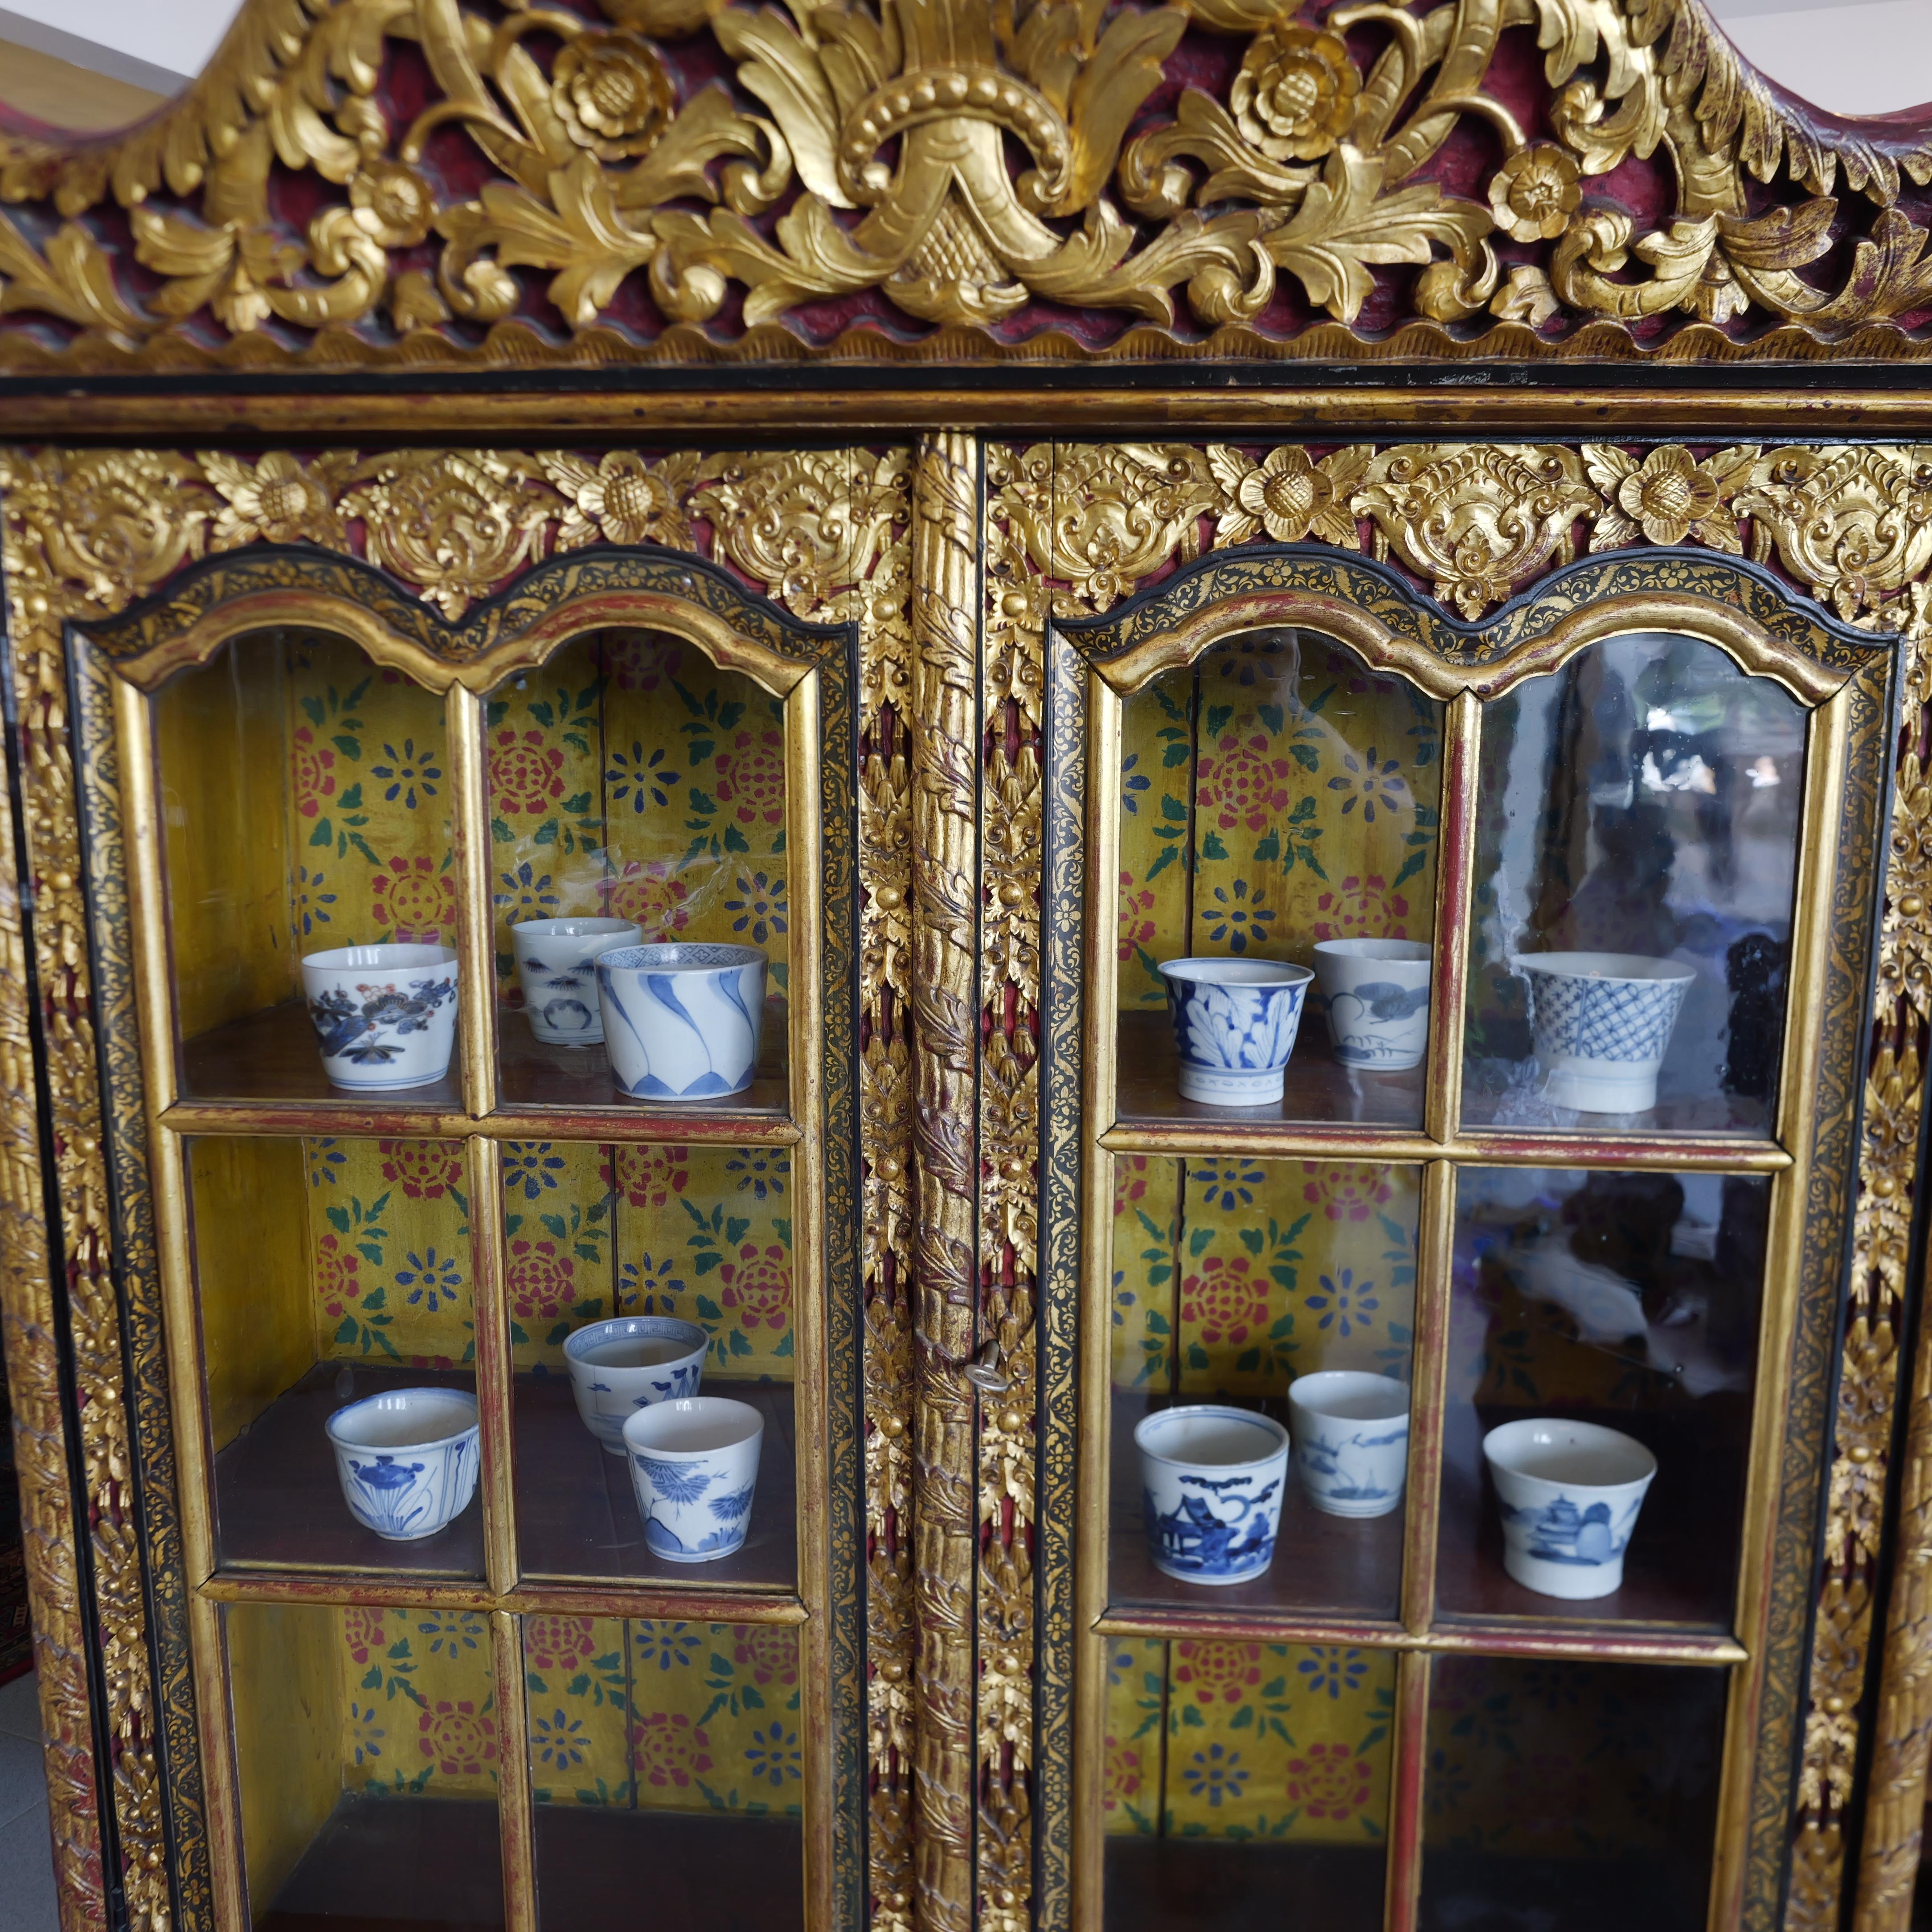 Ce meuble d'exportation indonésien du XIXe siècle, sculpté, laqué et doré, est un magnifique exemple de l'artisanat exquis et du flair artistique de la fin du XIXe siècle. Cette armoire est composée de deux parties distinctes : la partie supérieure